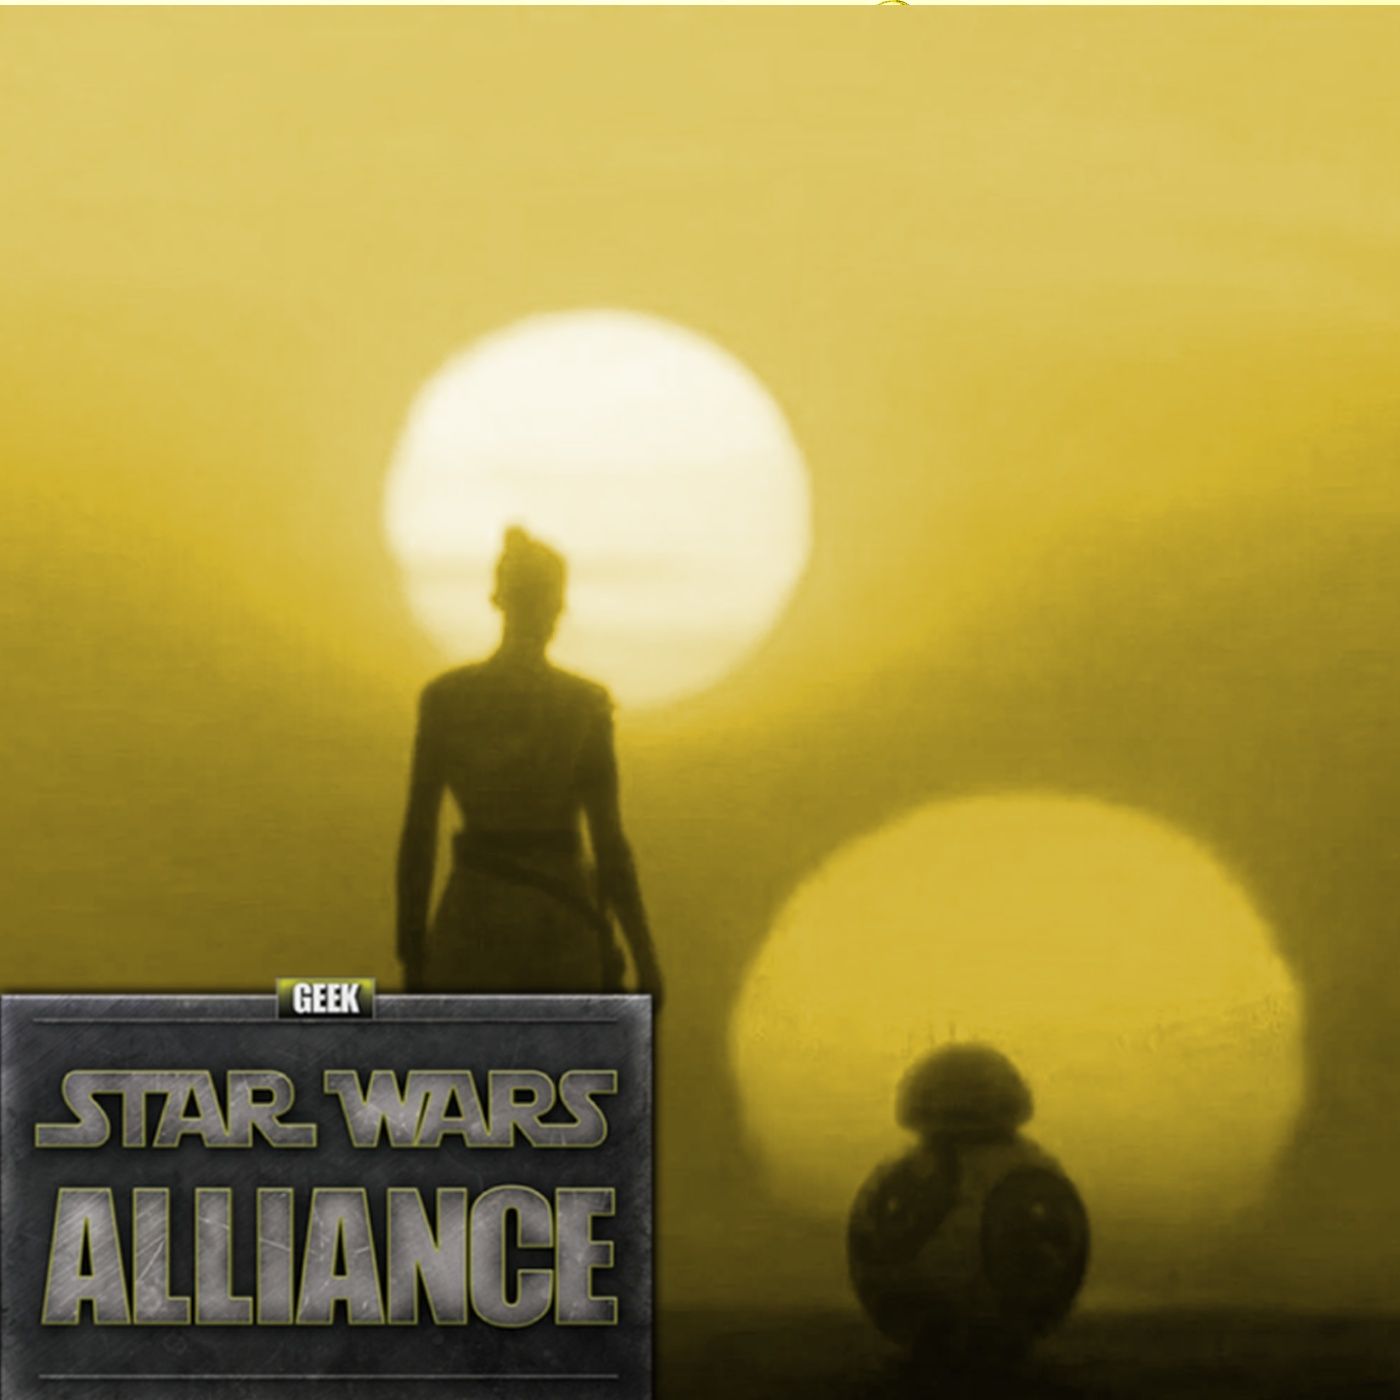 Star Wars Post Rise of Skywalker: Star Wars Alliance Episode LXV